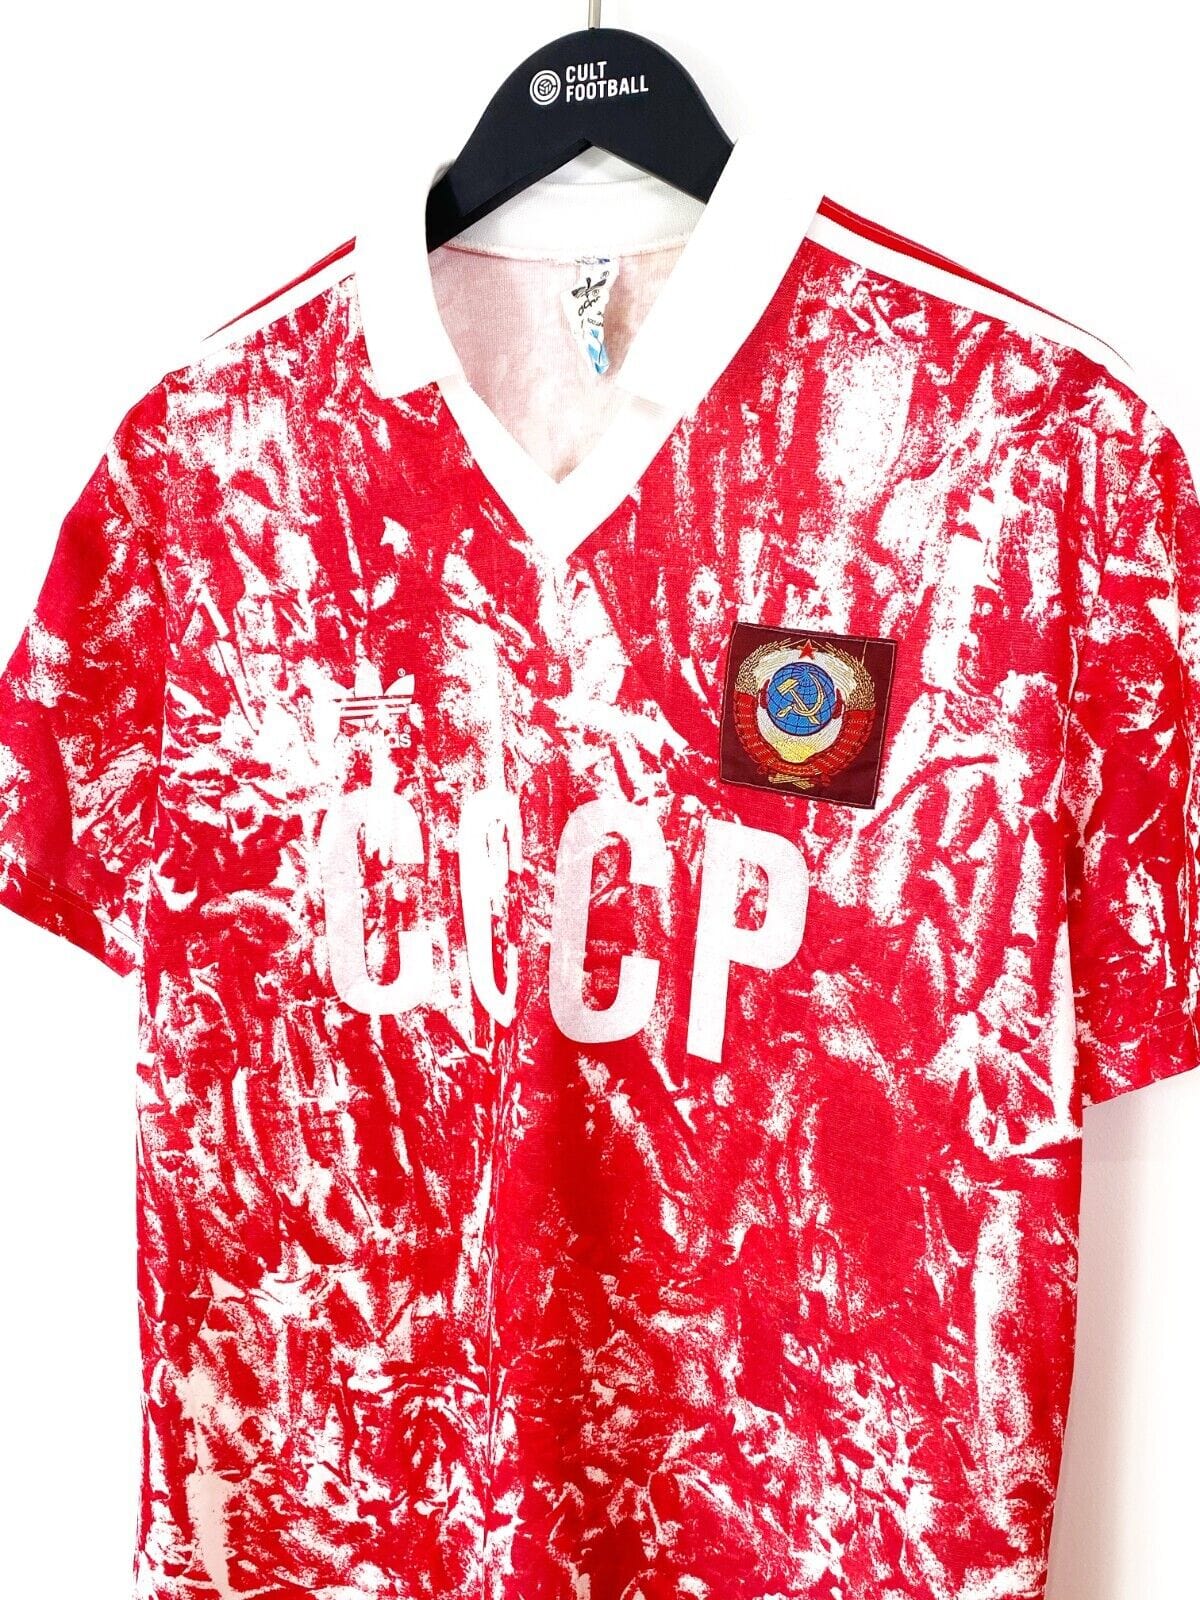 Soviet Union (USSR) home shirt 1989-1991 in Medium